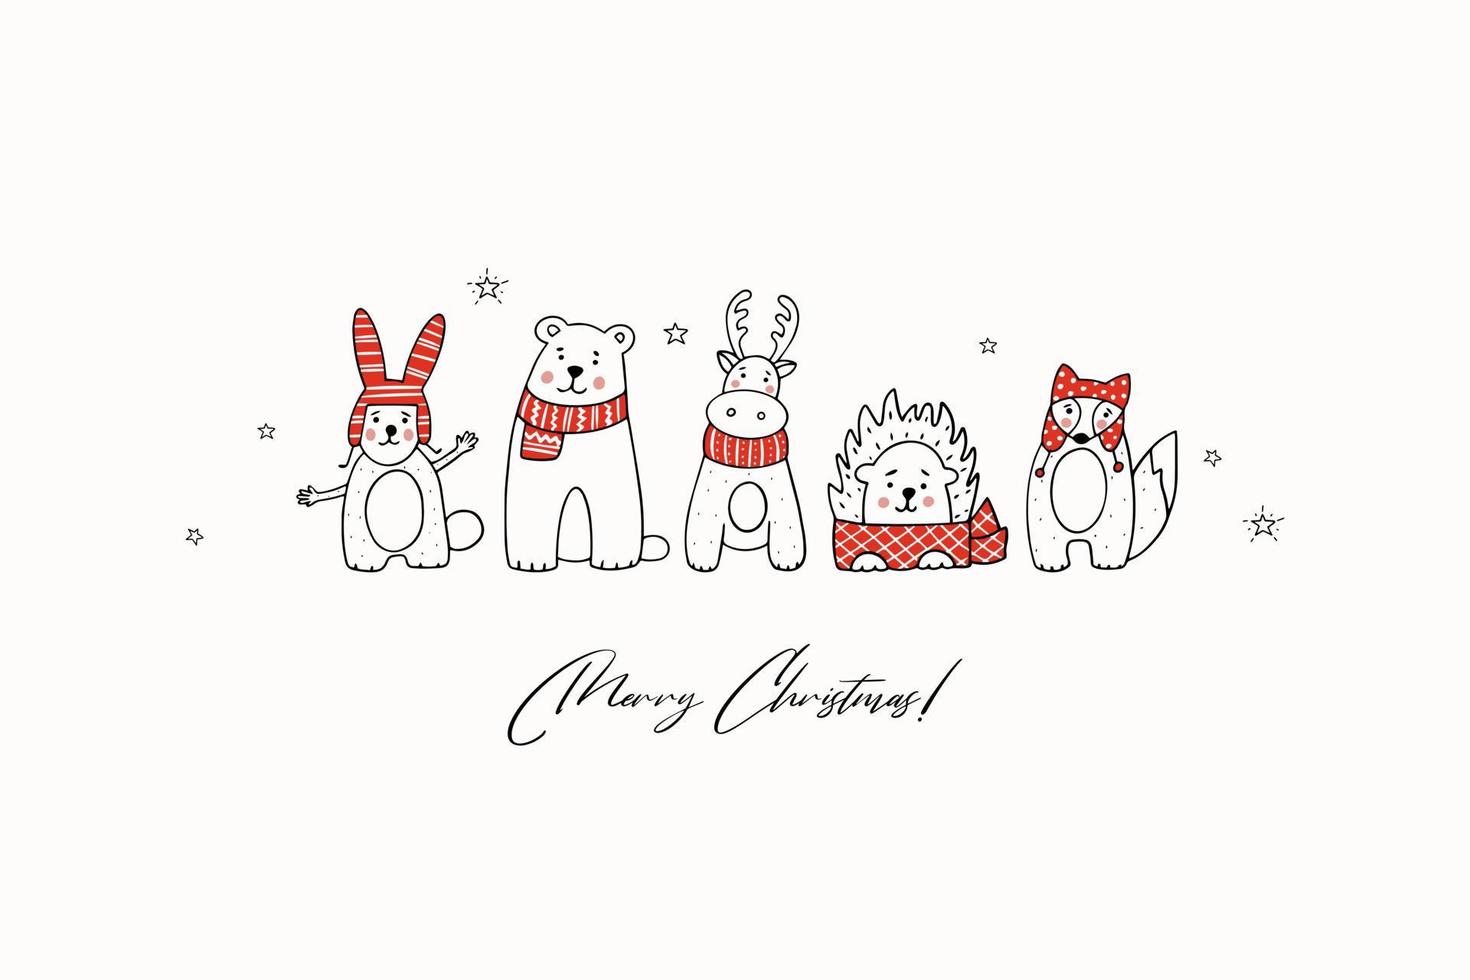 julhälsningskort med stiliserade djur i vinterkläder. ritad för hand vektor